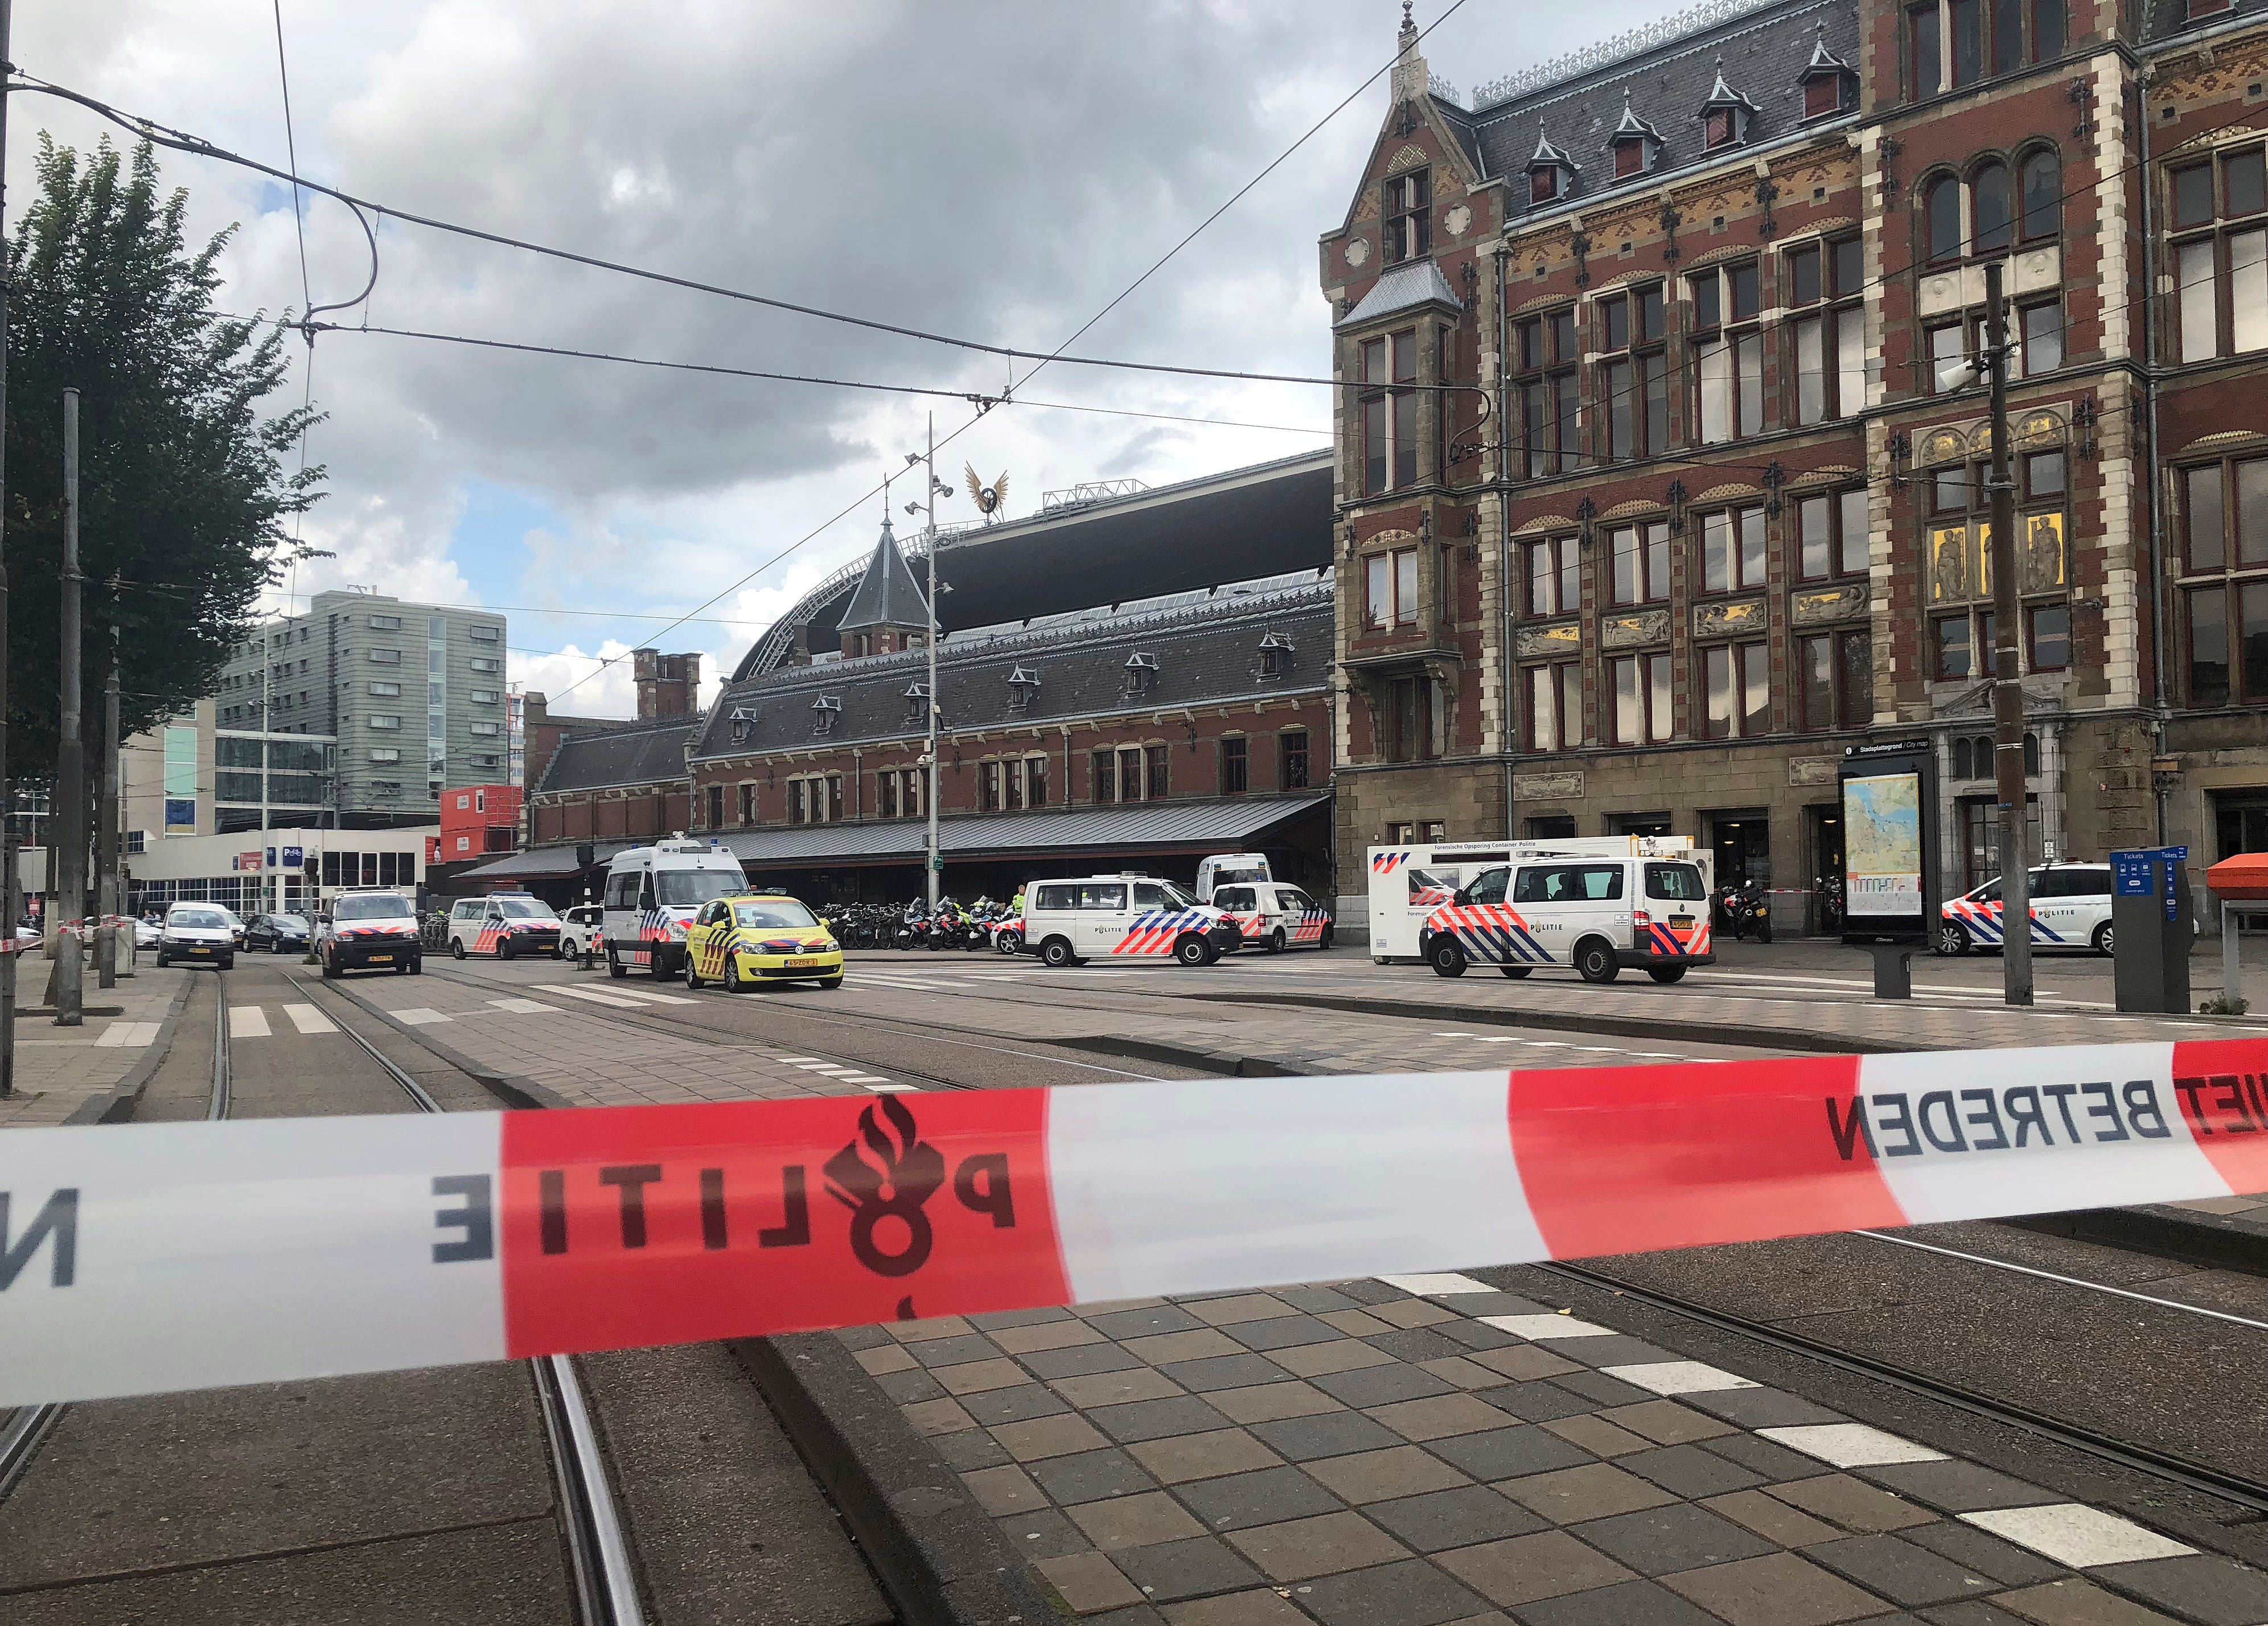 Netherlands Station Attack